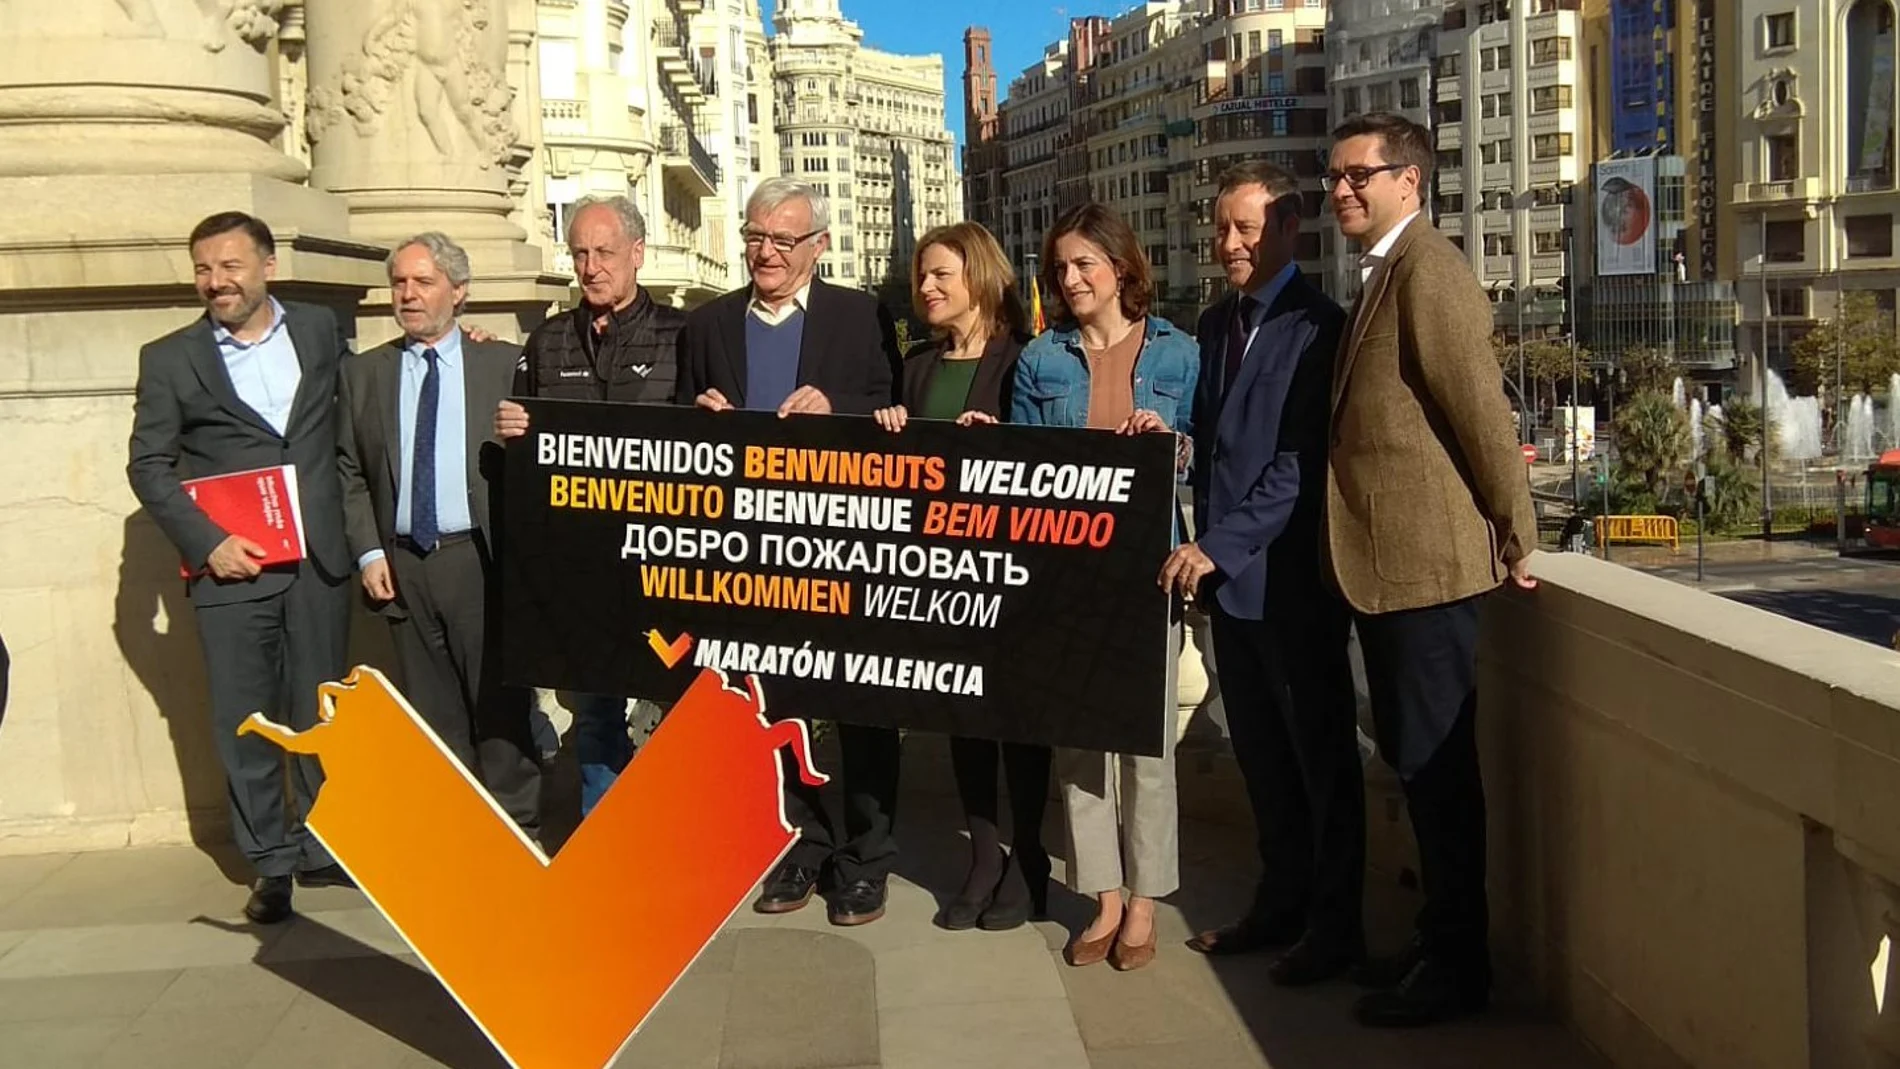 Presentación de la maratón de Valencia en el balcón del ayuntamiento